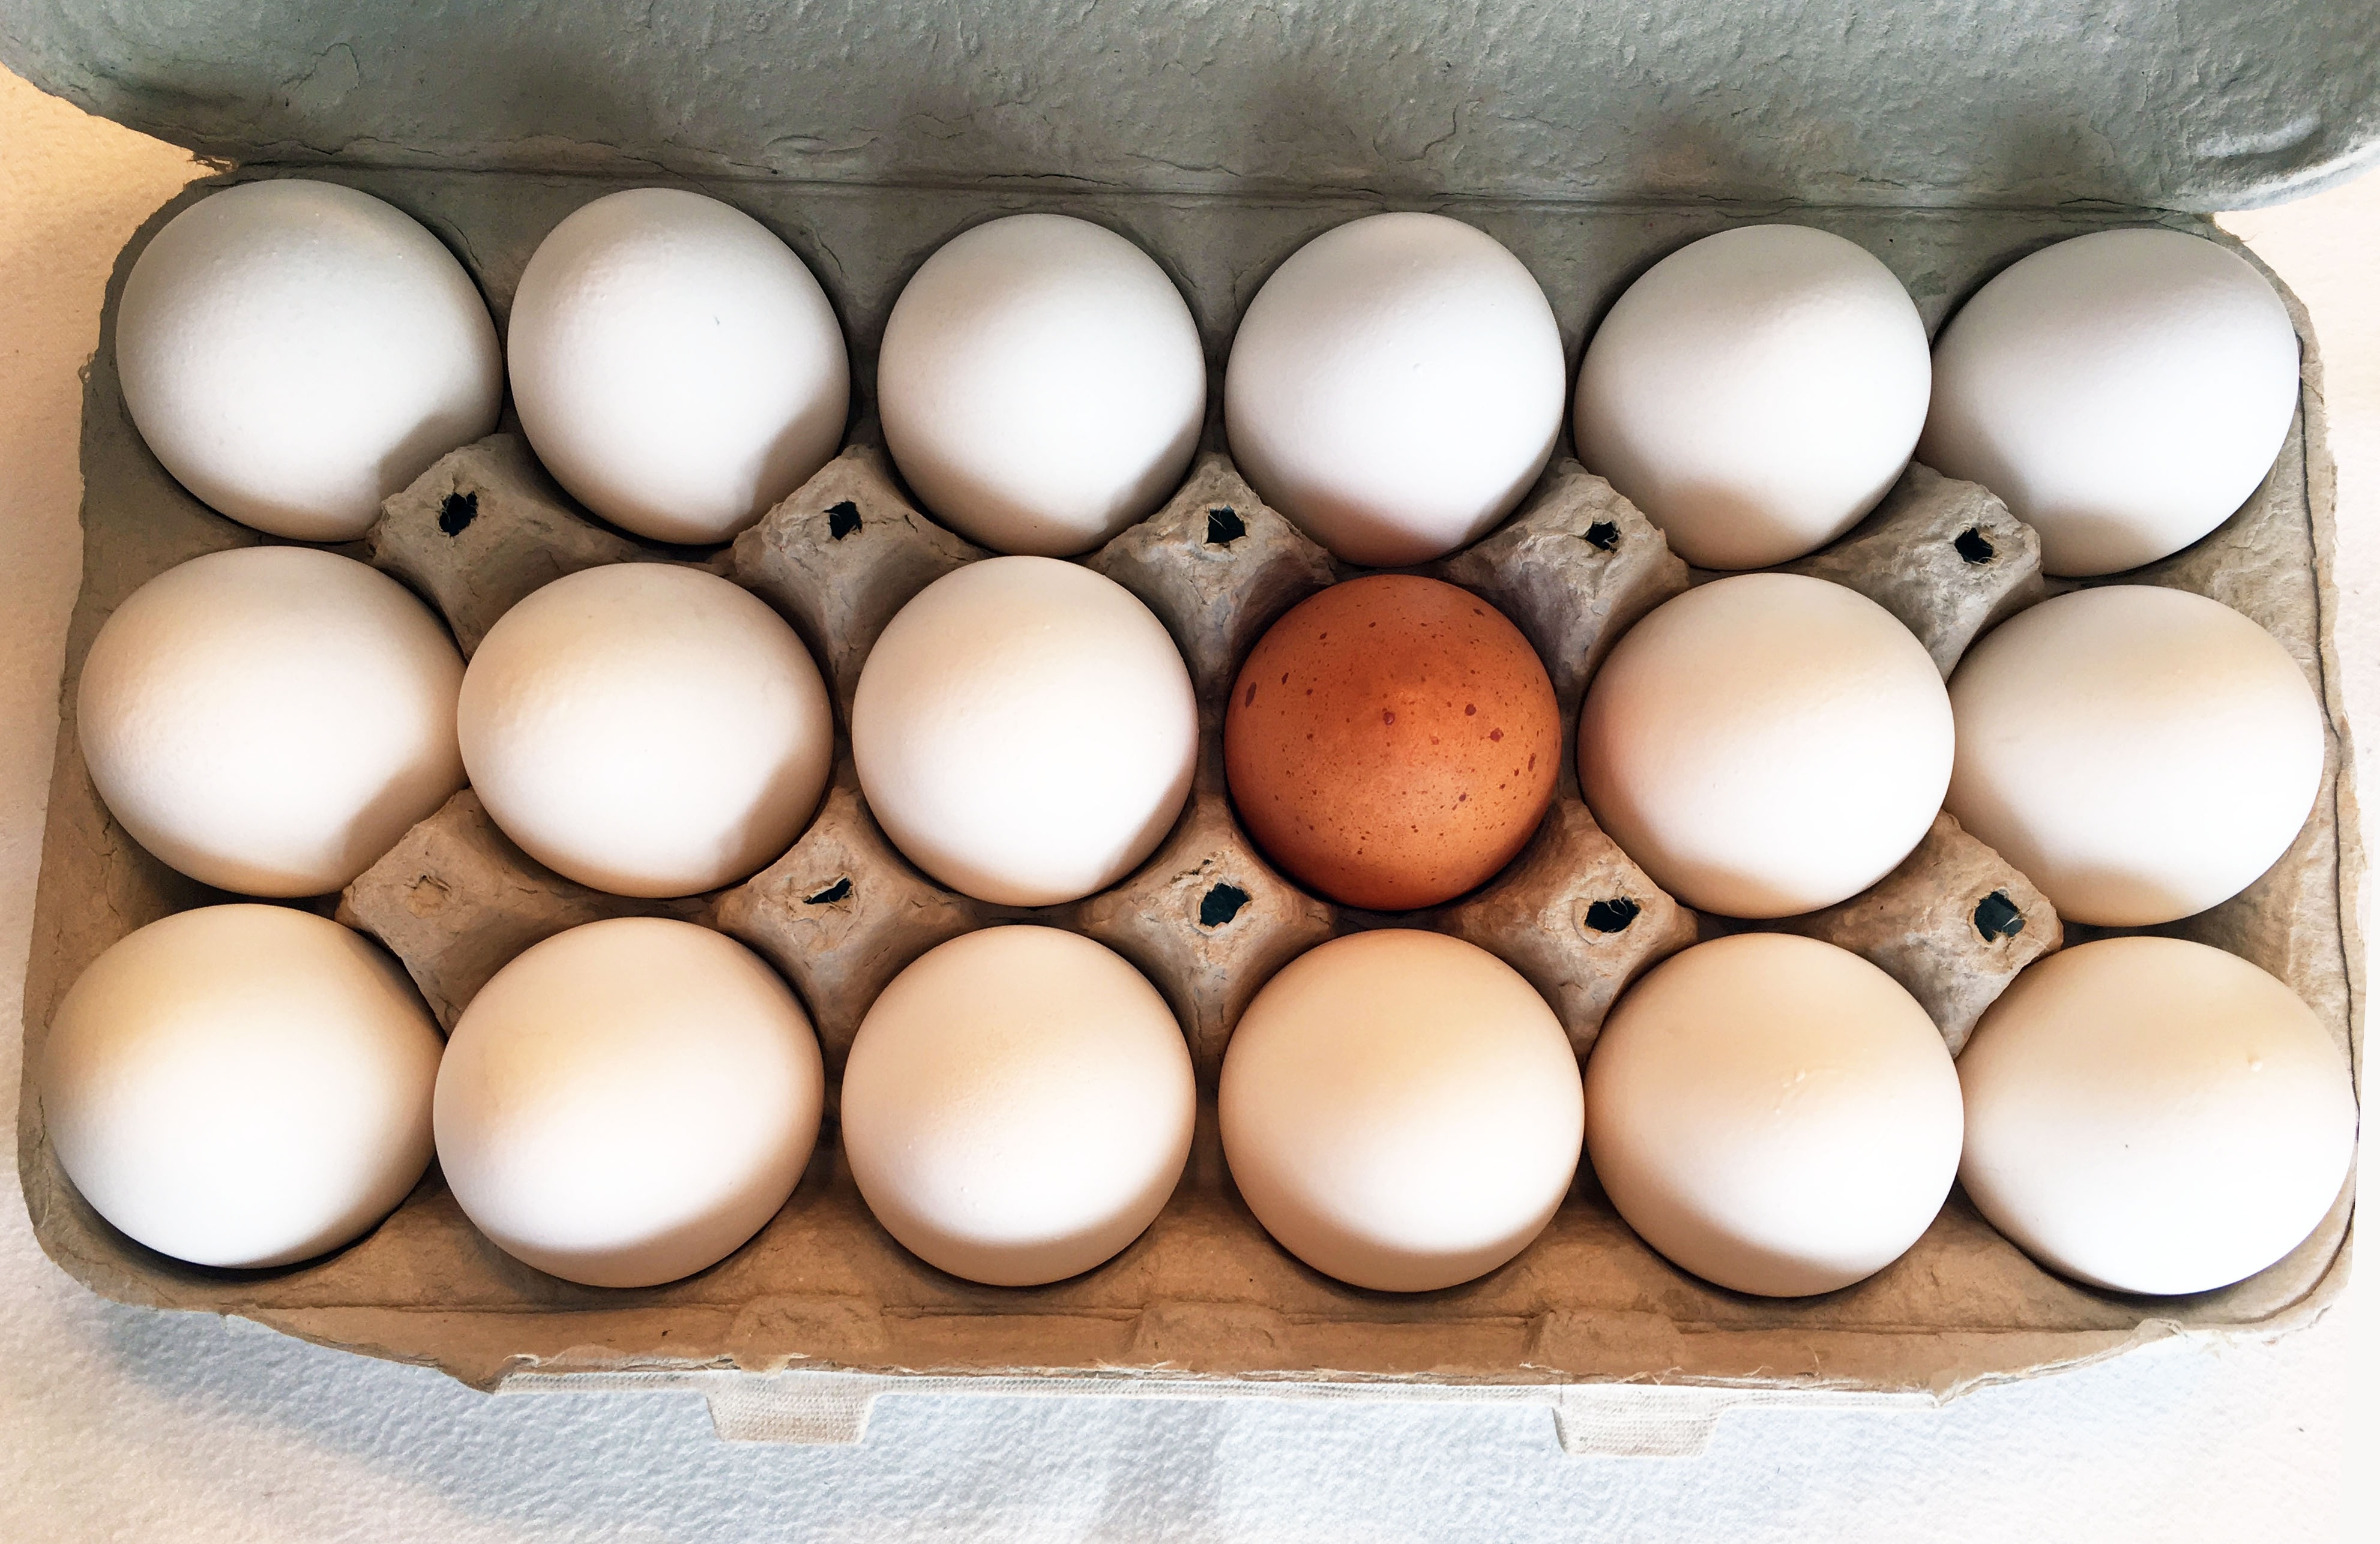 18 eggs in egg case